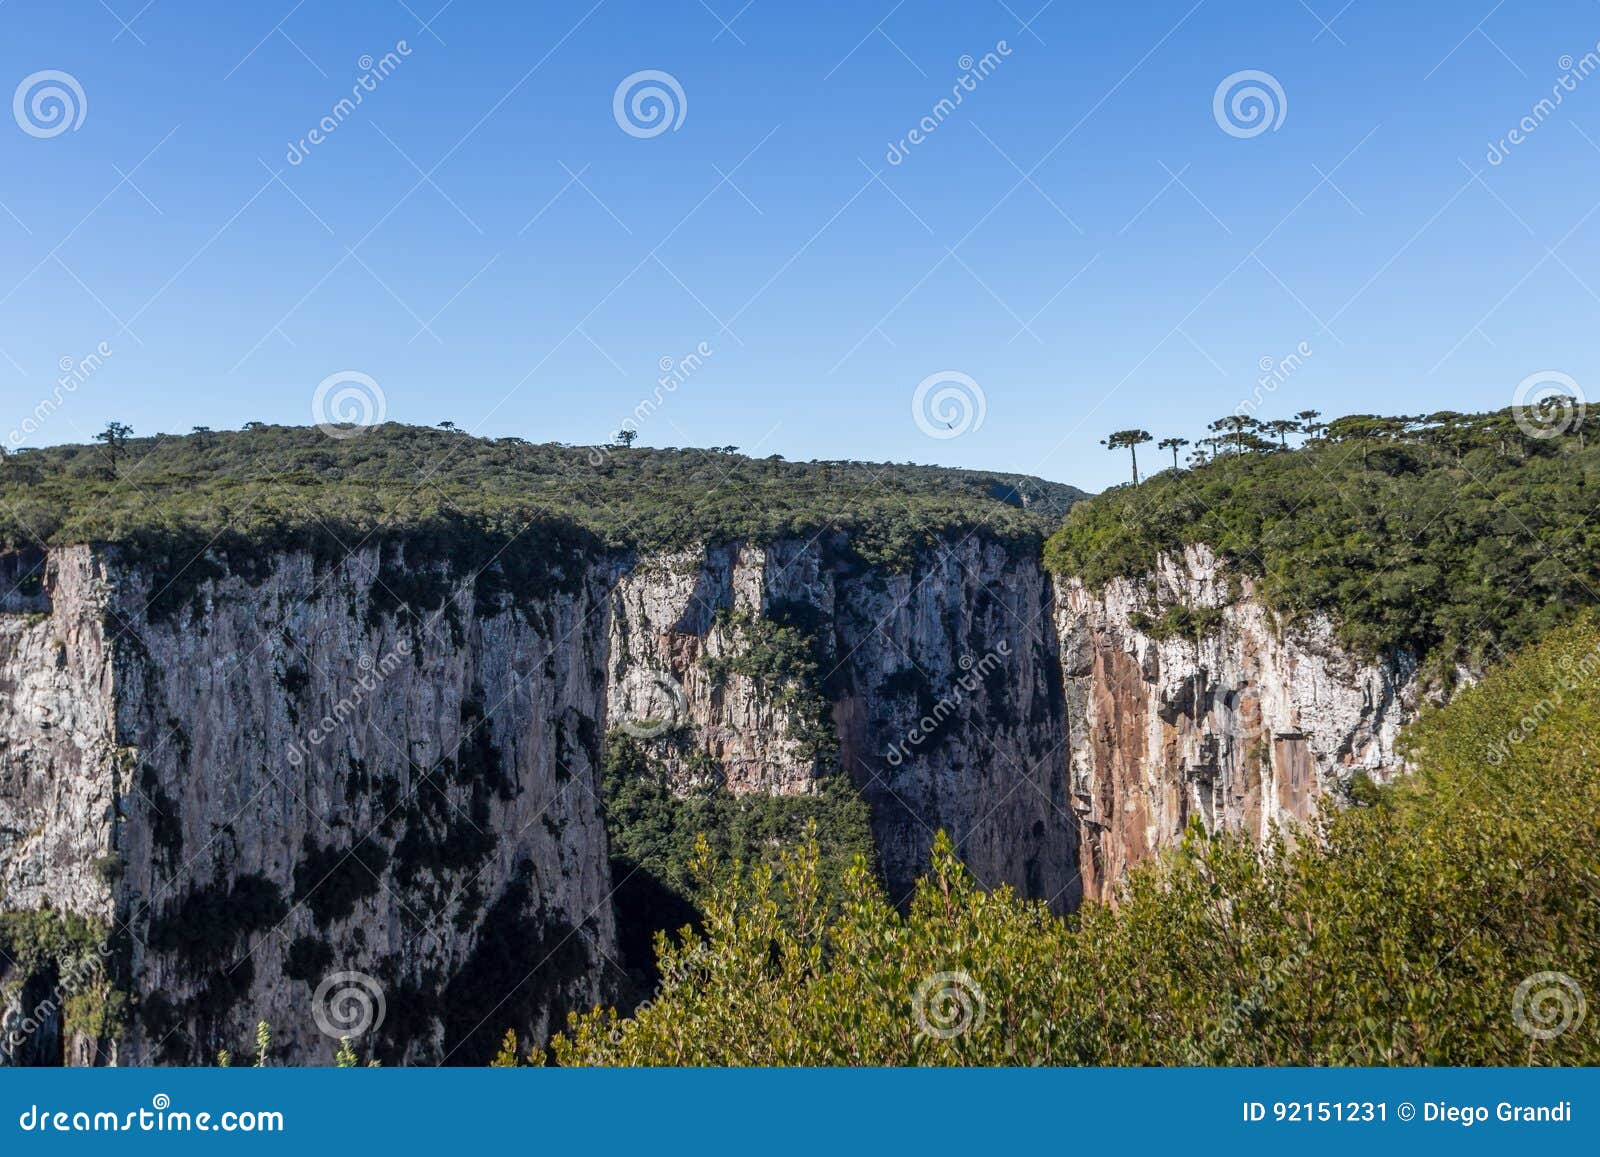 itaimbezinho canyon at aparados da serra national park - cambara do sul, rio grande do sul, brazil